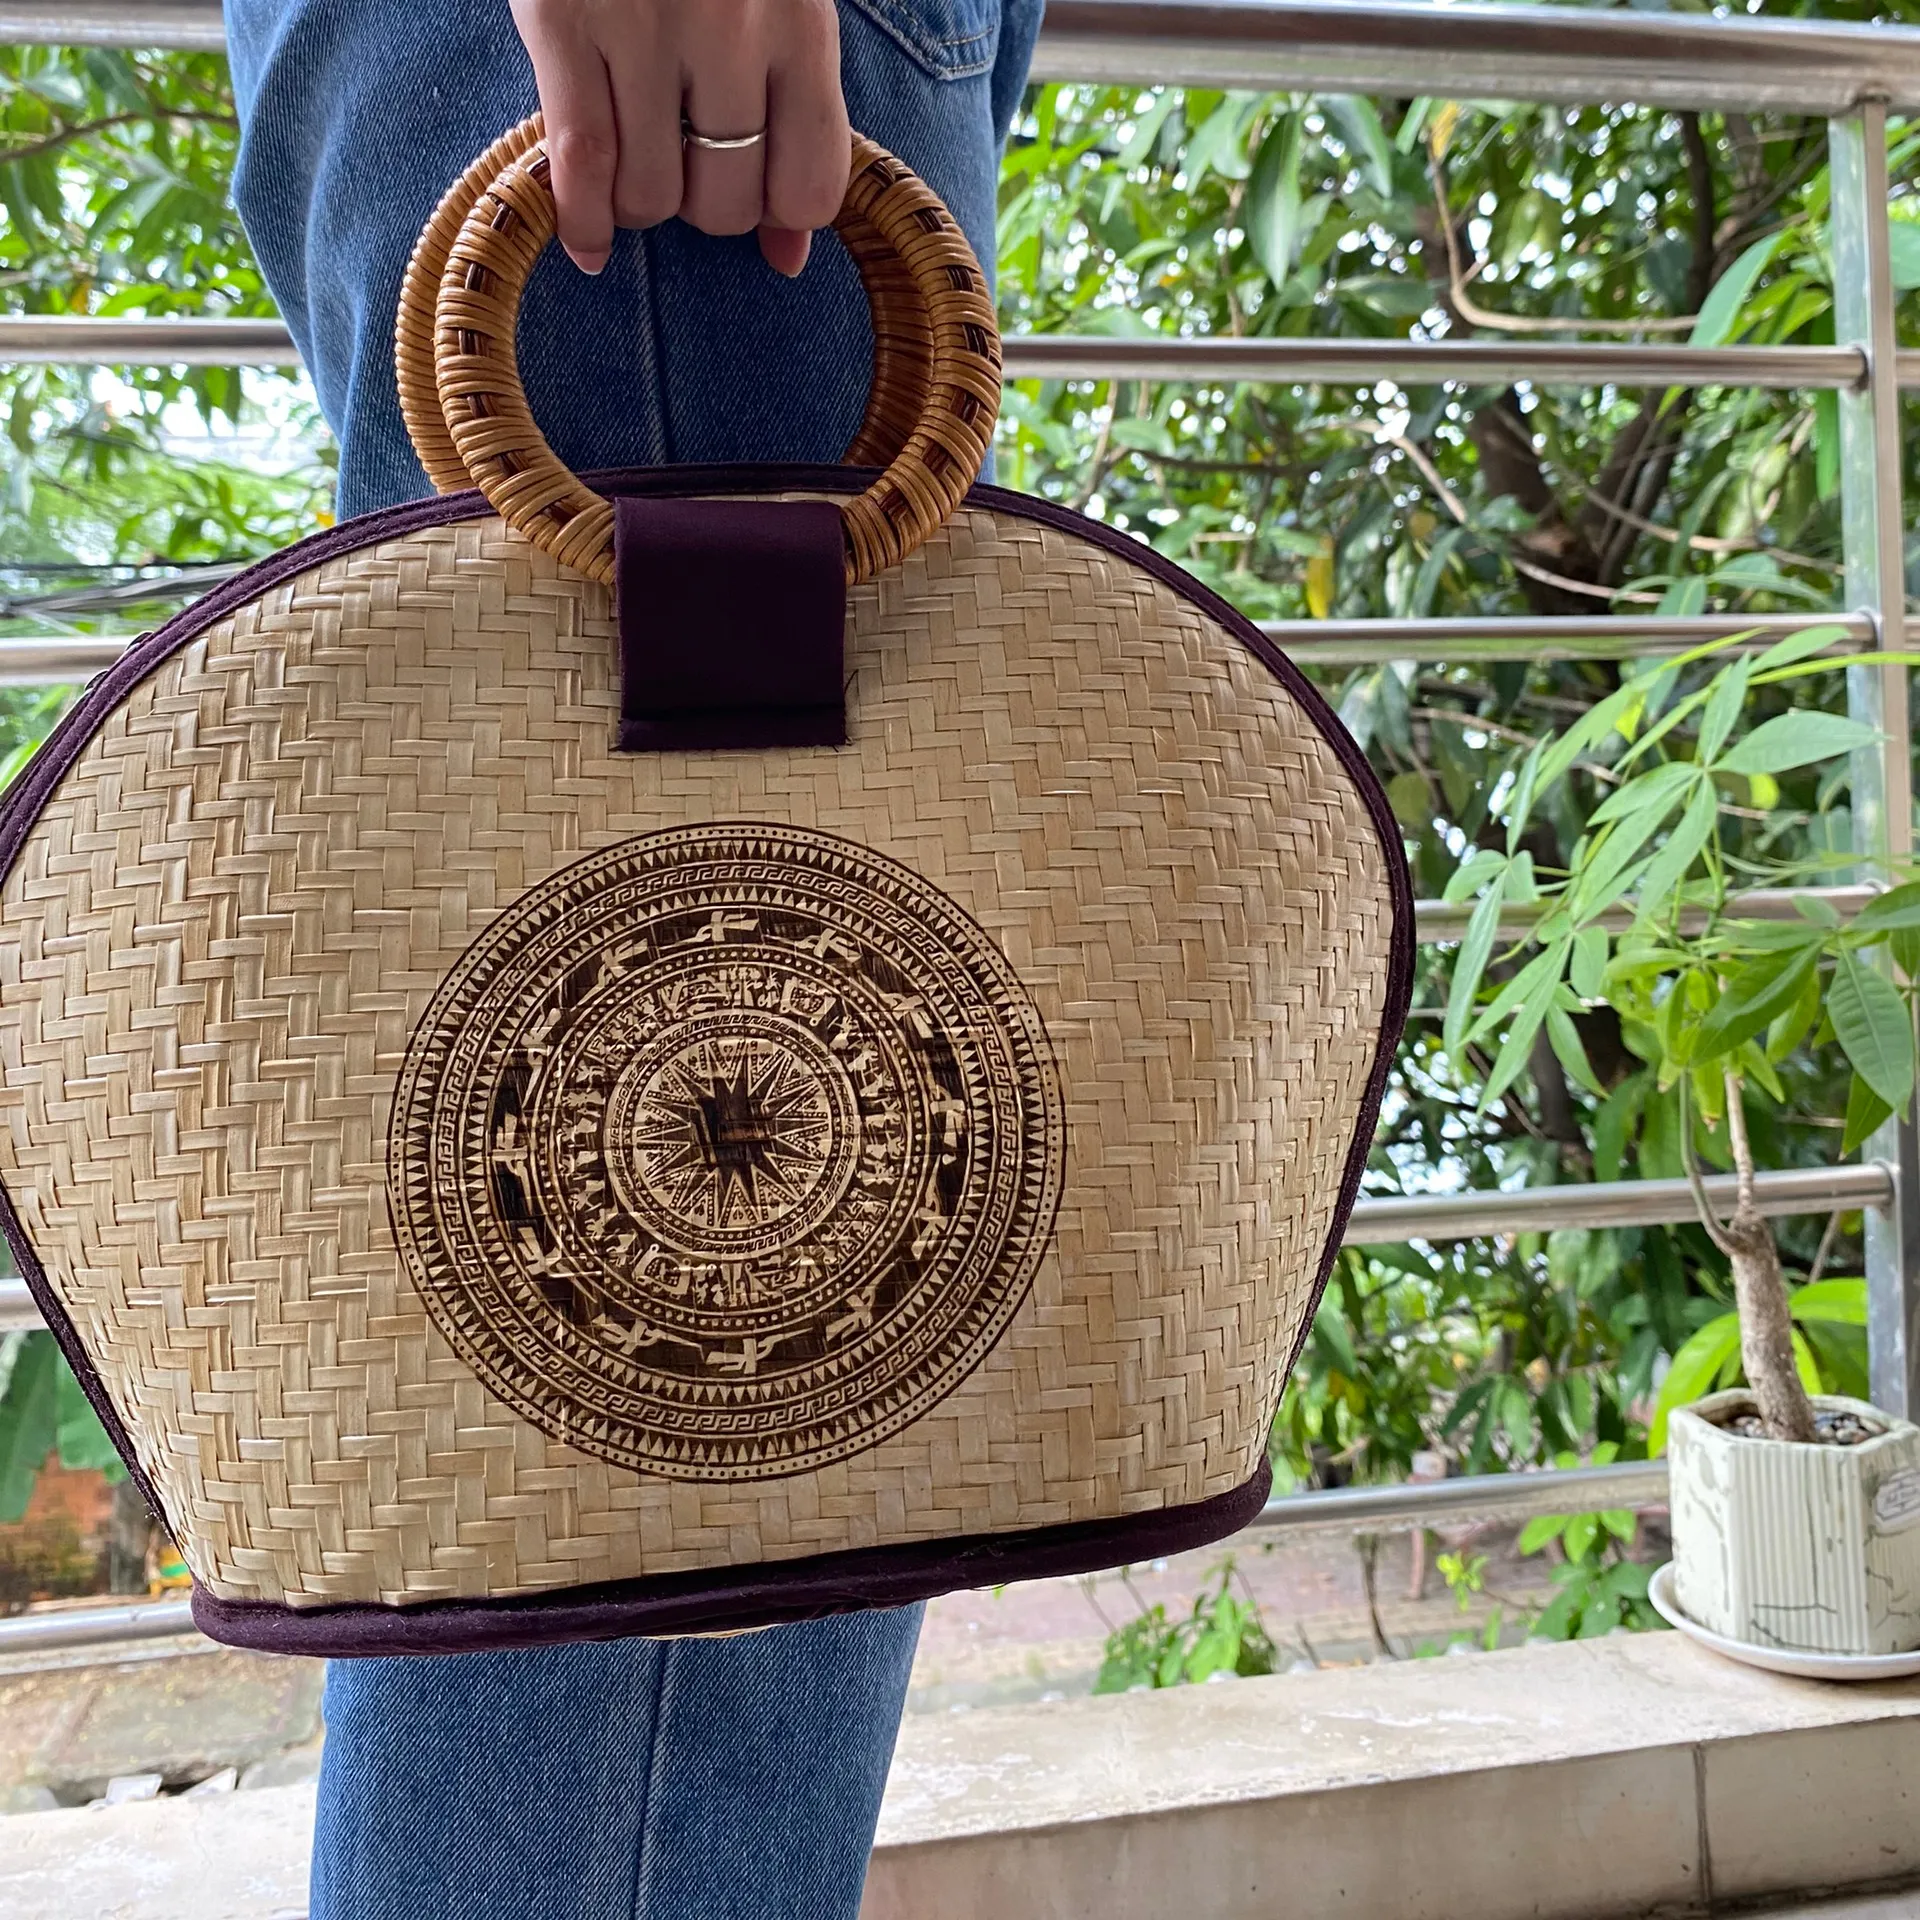 Bolsa de palha de grama do vietnã, acessório feminino, bolsa de palha natural feita à mão para mercado e compras